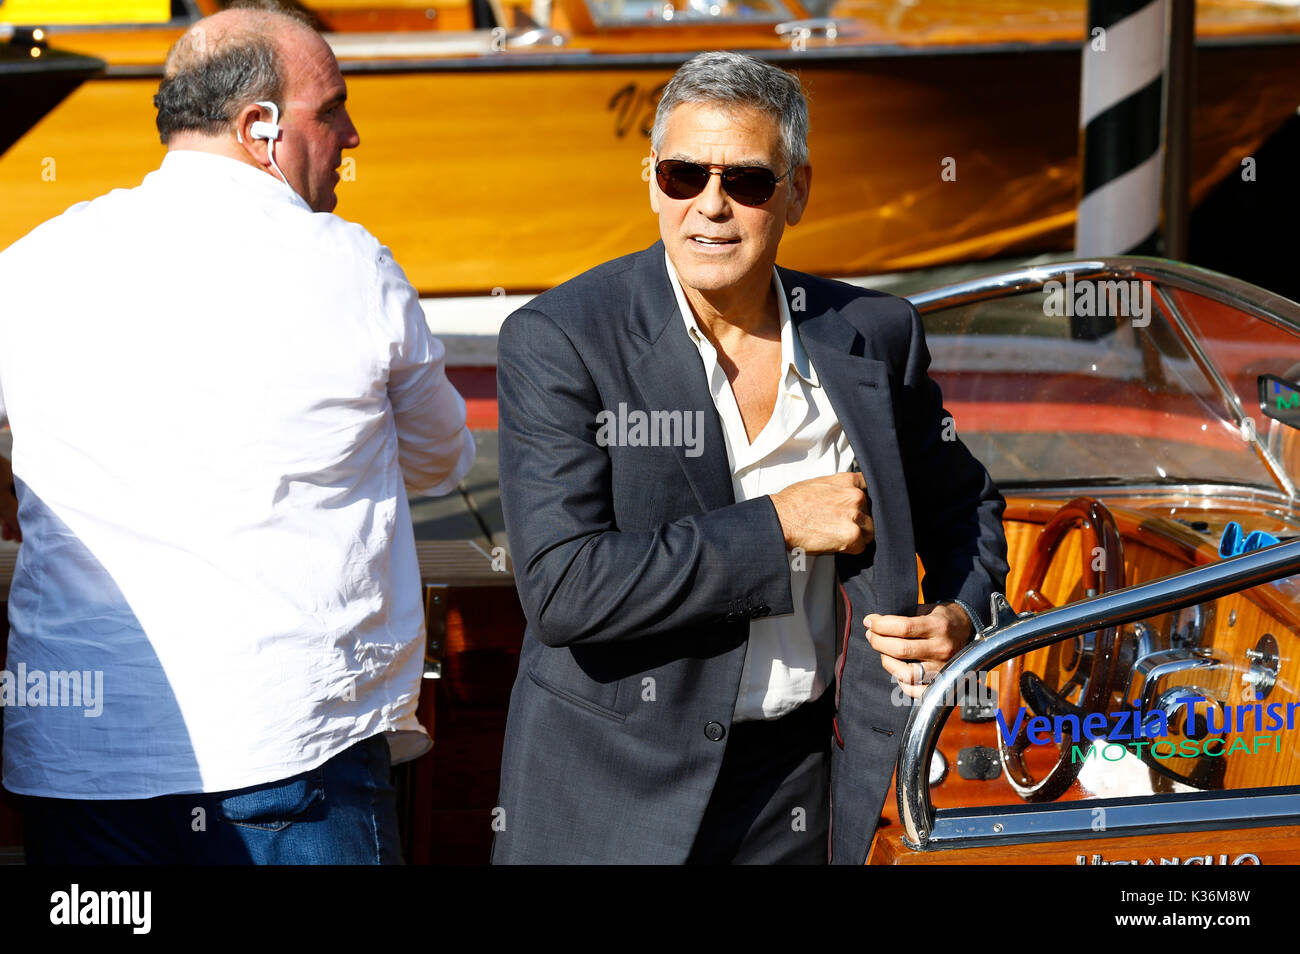 Venedig, Italien. 01 Sep, 2017. George Clooney chauffiert werden von Alessandro greco beim Verlassen des Hotel Excelsior nach Interviews geben während des 74. Filmfestival von Venedig am 01 September, 2017 in Venedig, Italien Quelle: geisler - fotopress/alamy leben Nachrichten Stockfoto